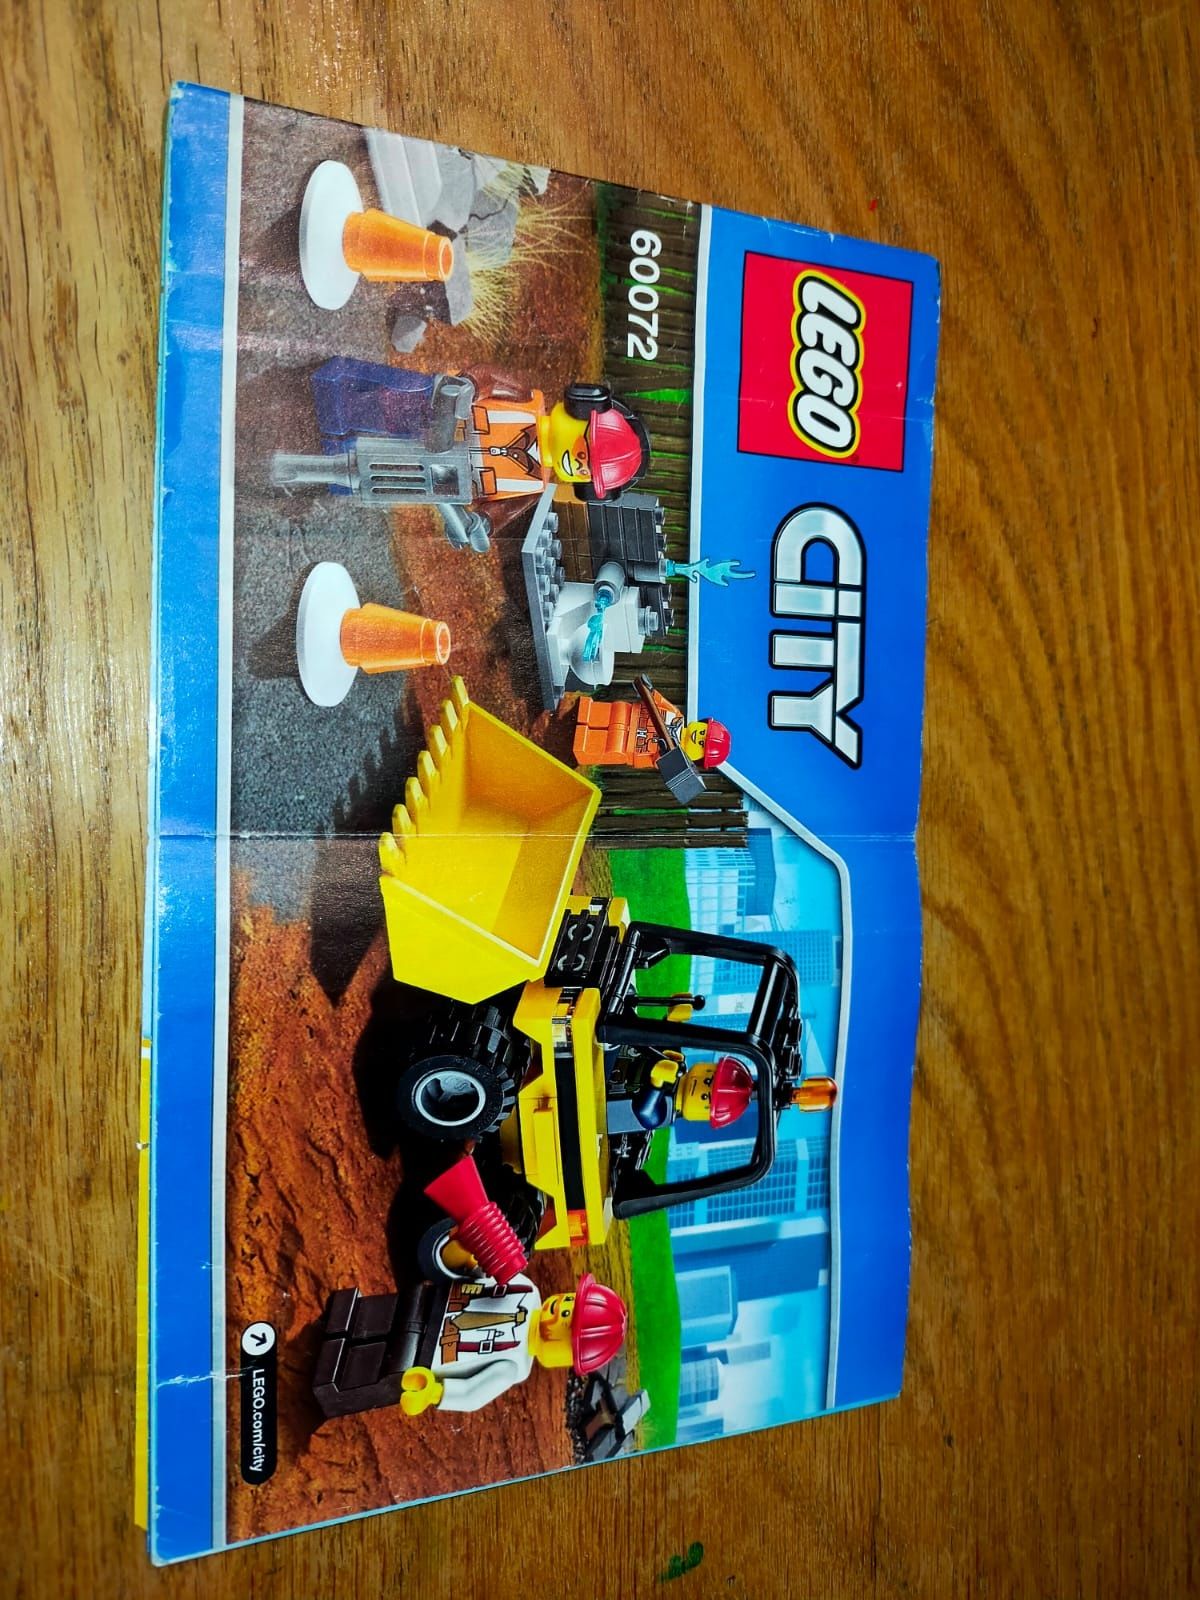 LEGO City 60072 Wyburzanie zestaw startowy